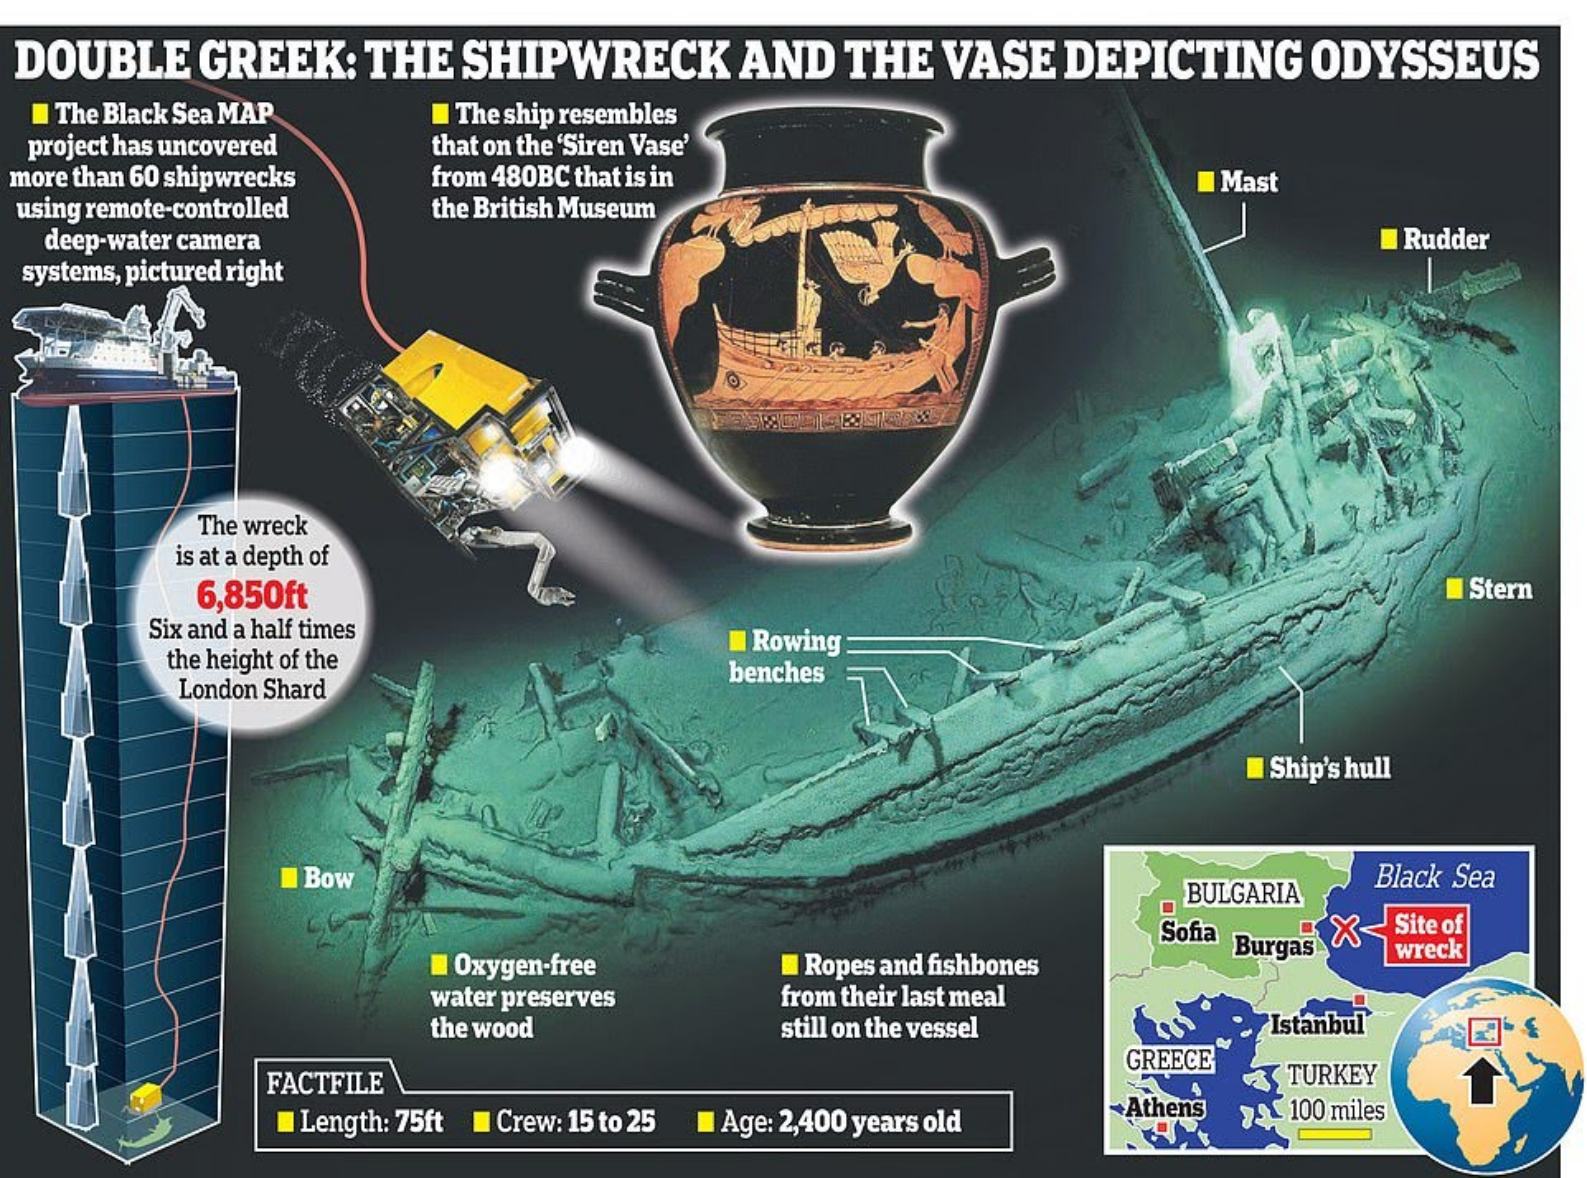 Objav sa podaril tímu výskumníkov z Čiernomorského námorného archeologického projektu (MAP), ktorí v tejto oblasti robili prieskumy posledné tri roky. Tím použil pokročilú podvodnú robotickú technológiu na prieskum morského dna a objavil vrak lode viac ako 1.3 míle pod povrchom.